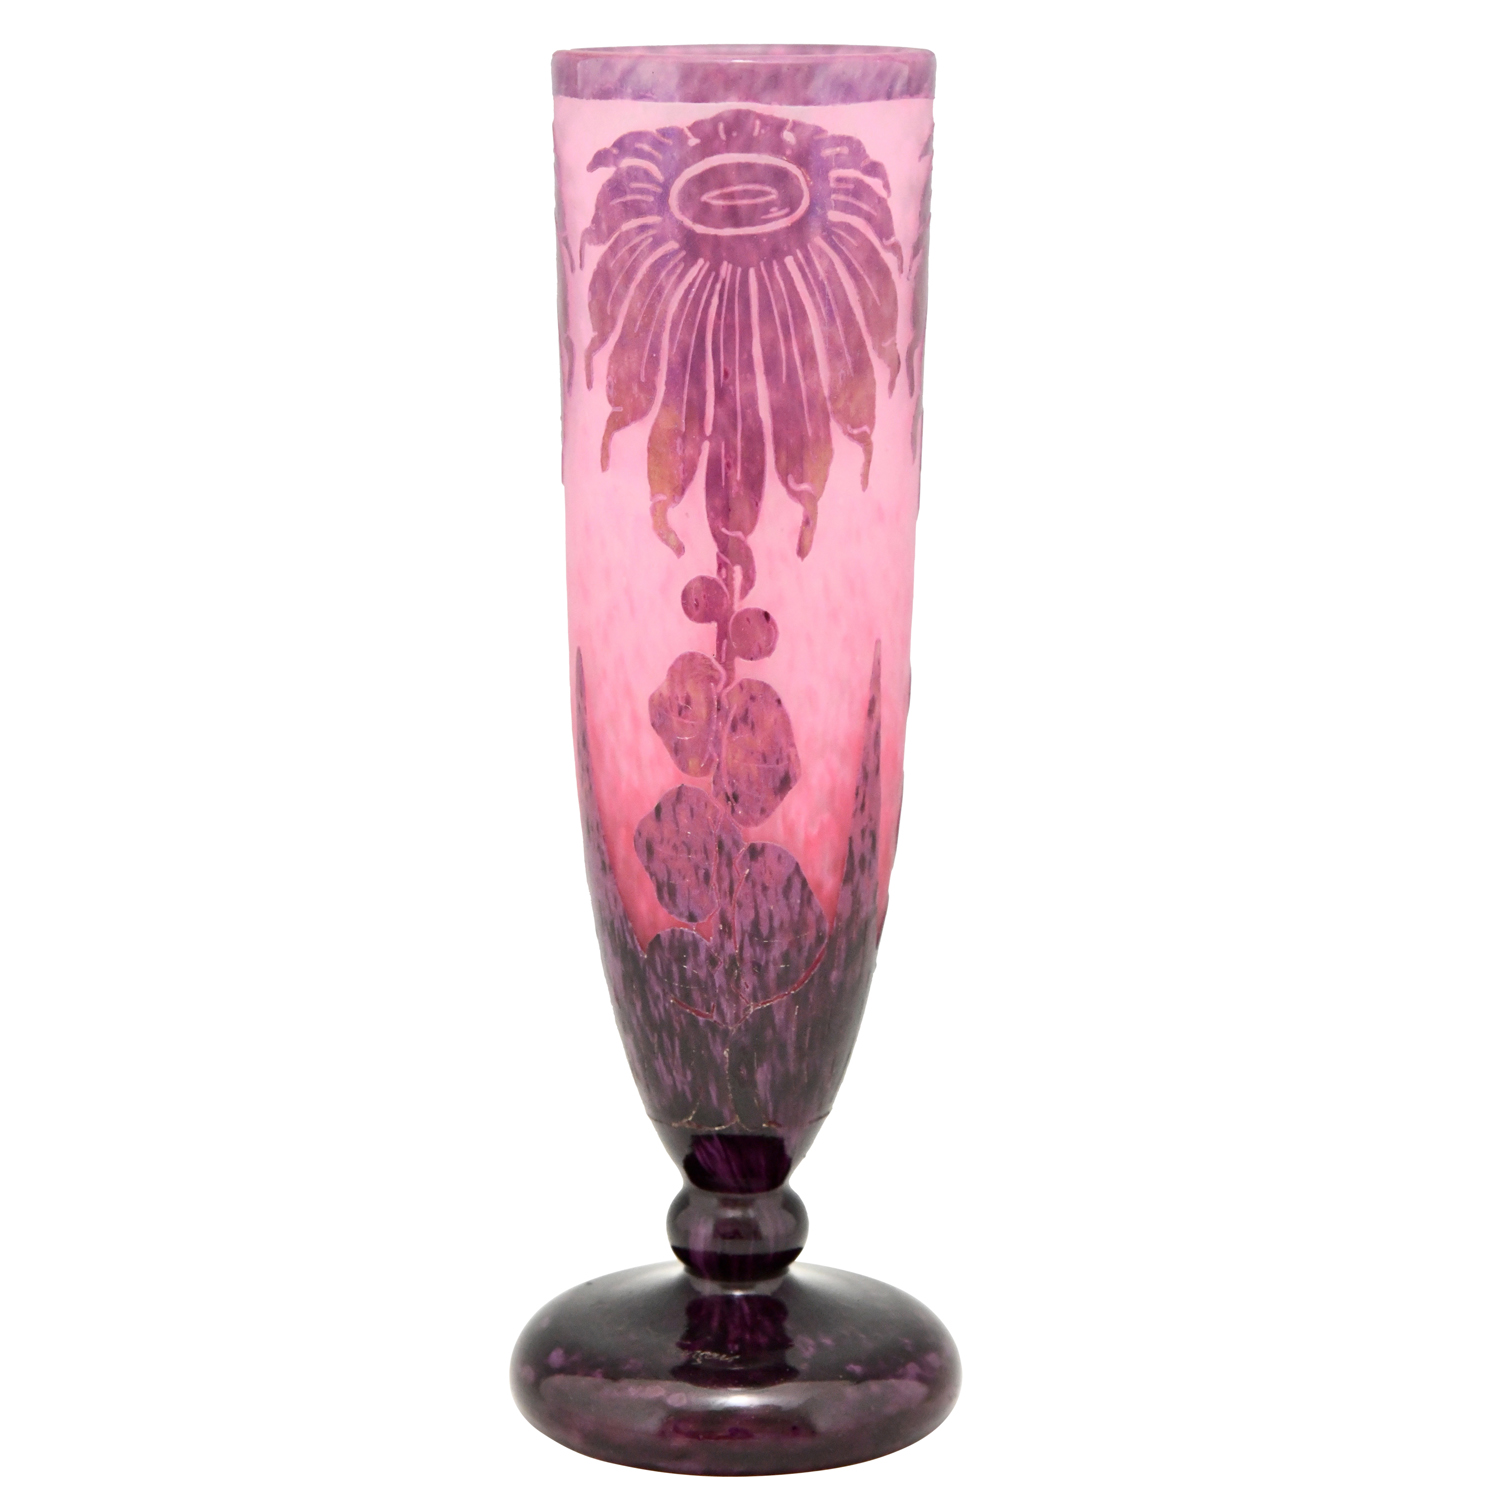 Dahlias  Art Deco cameo glass vase with flowers